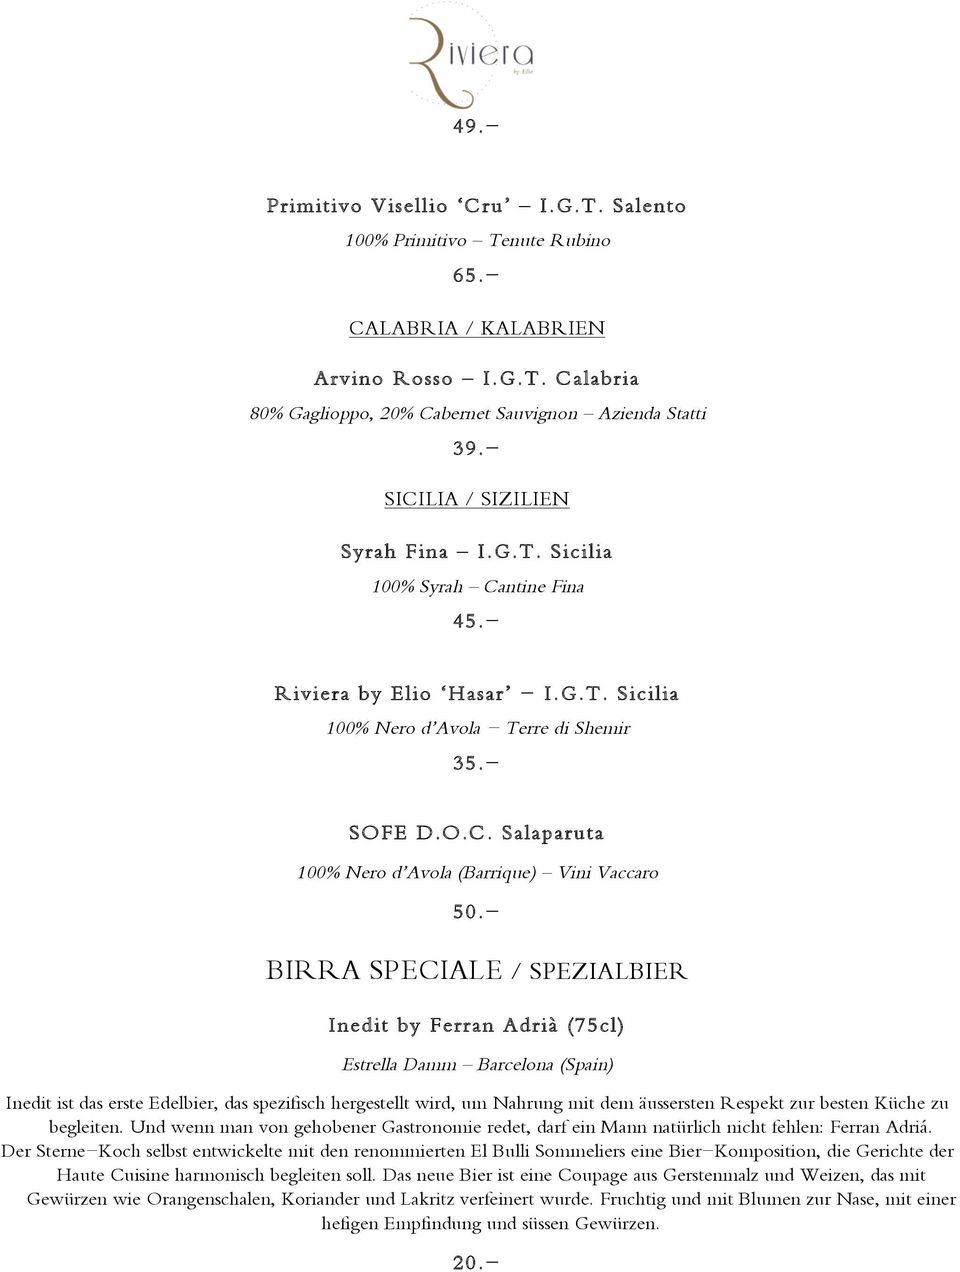 - BIRRA SPECIALE / SPEZIALBIER Inedit by Ferran Adrià (75cl) Estrella Damm Barcelona (Spain) Inedit ist das erste Edelbier, das spezifisch hergestellt wird, um Nahrung mit dem äussersten Respekt zur